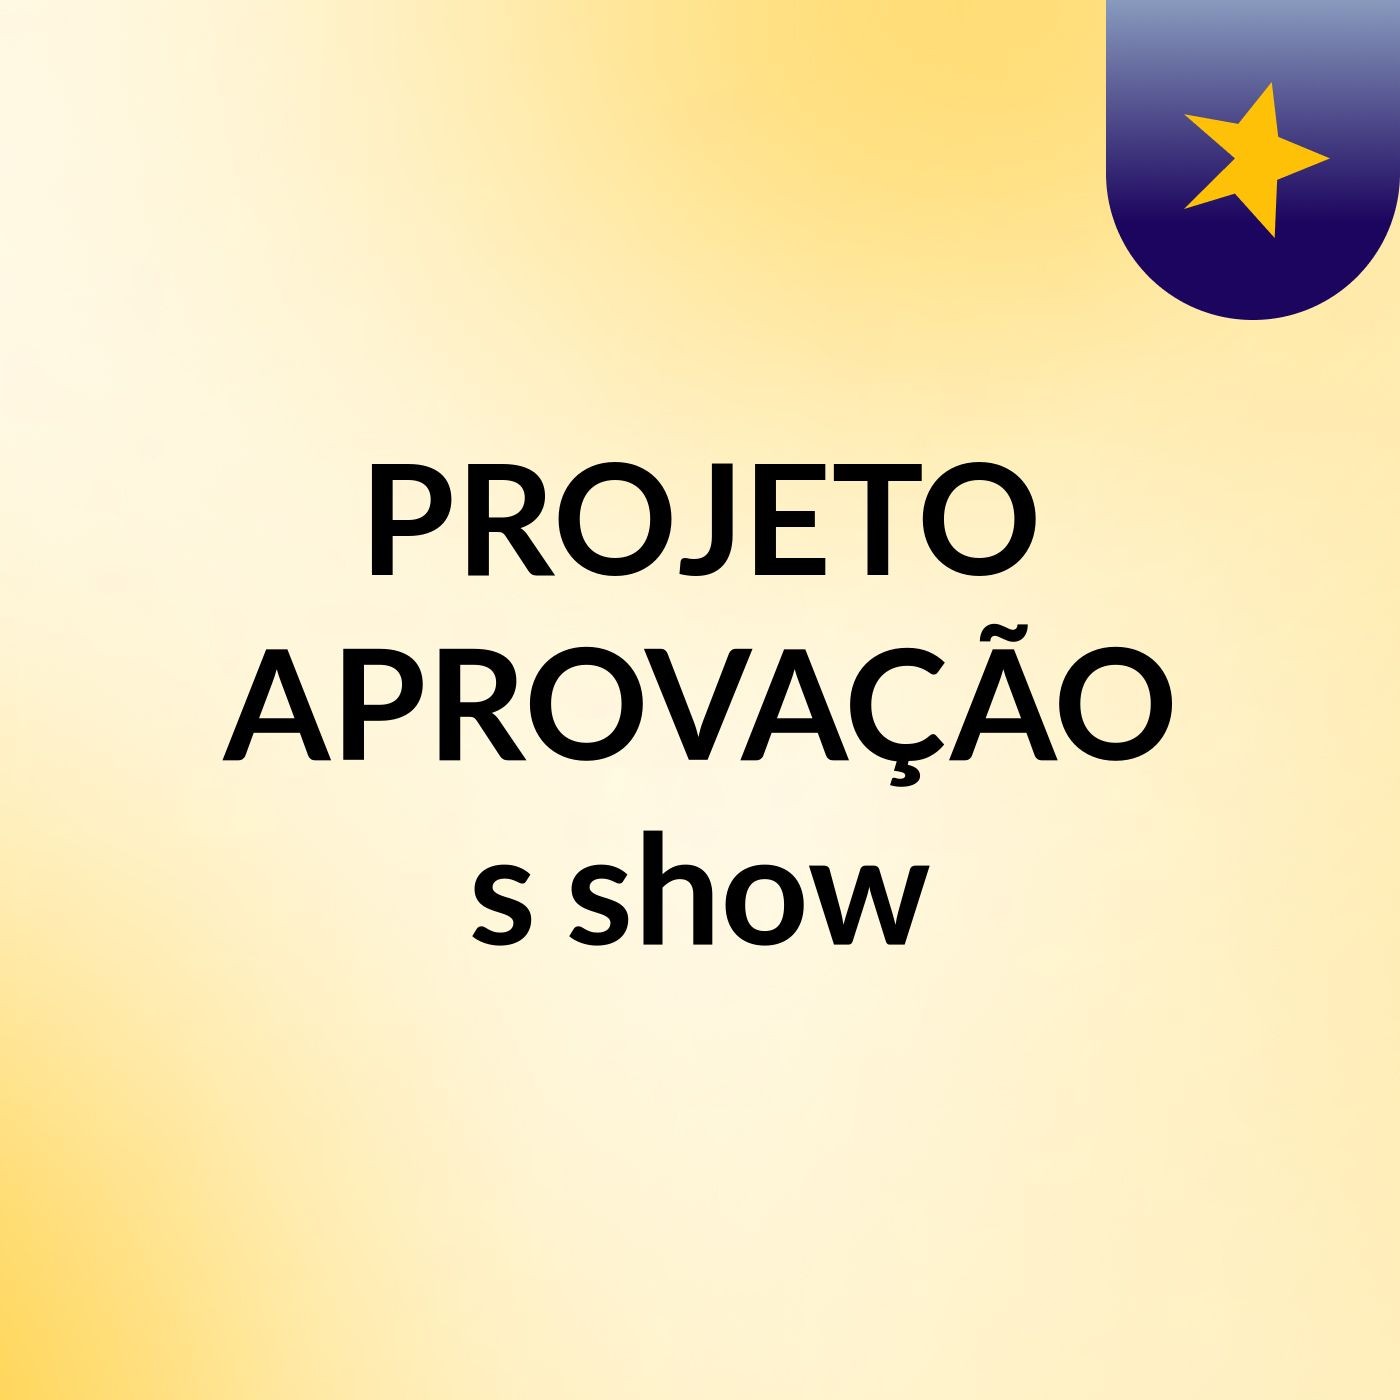 PROJETO APROVAÇÃO's show